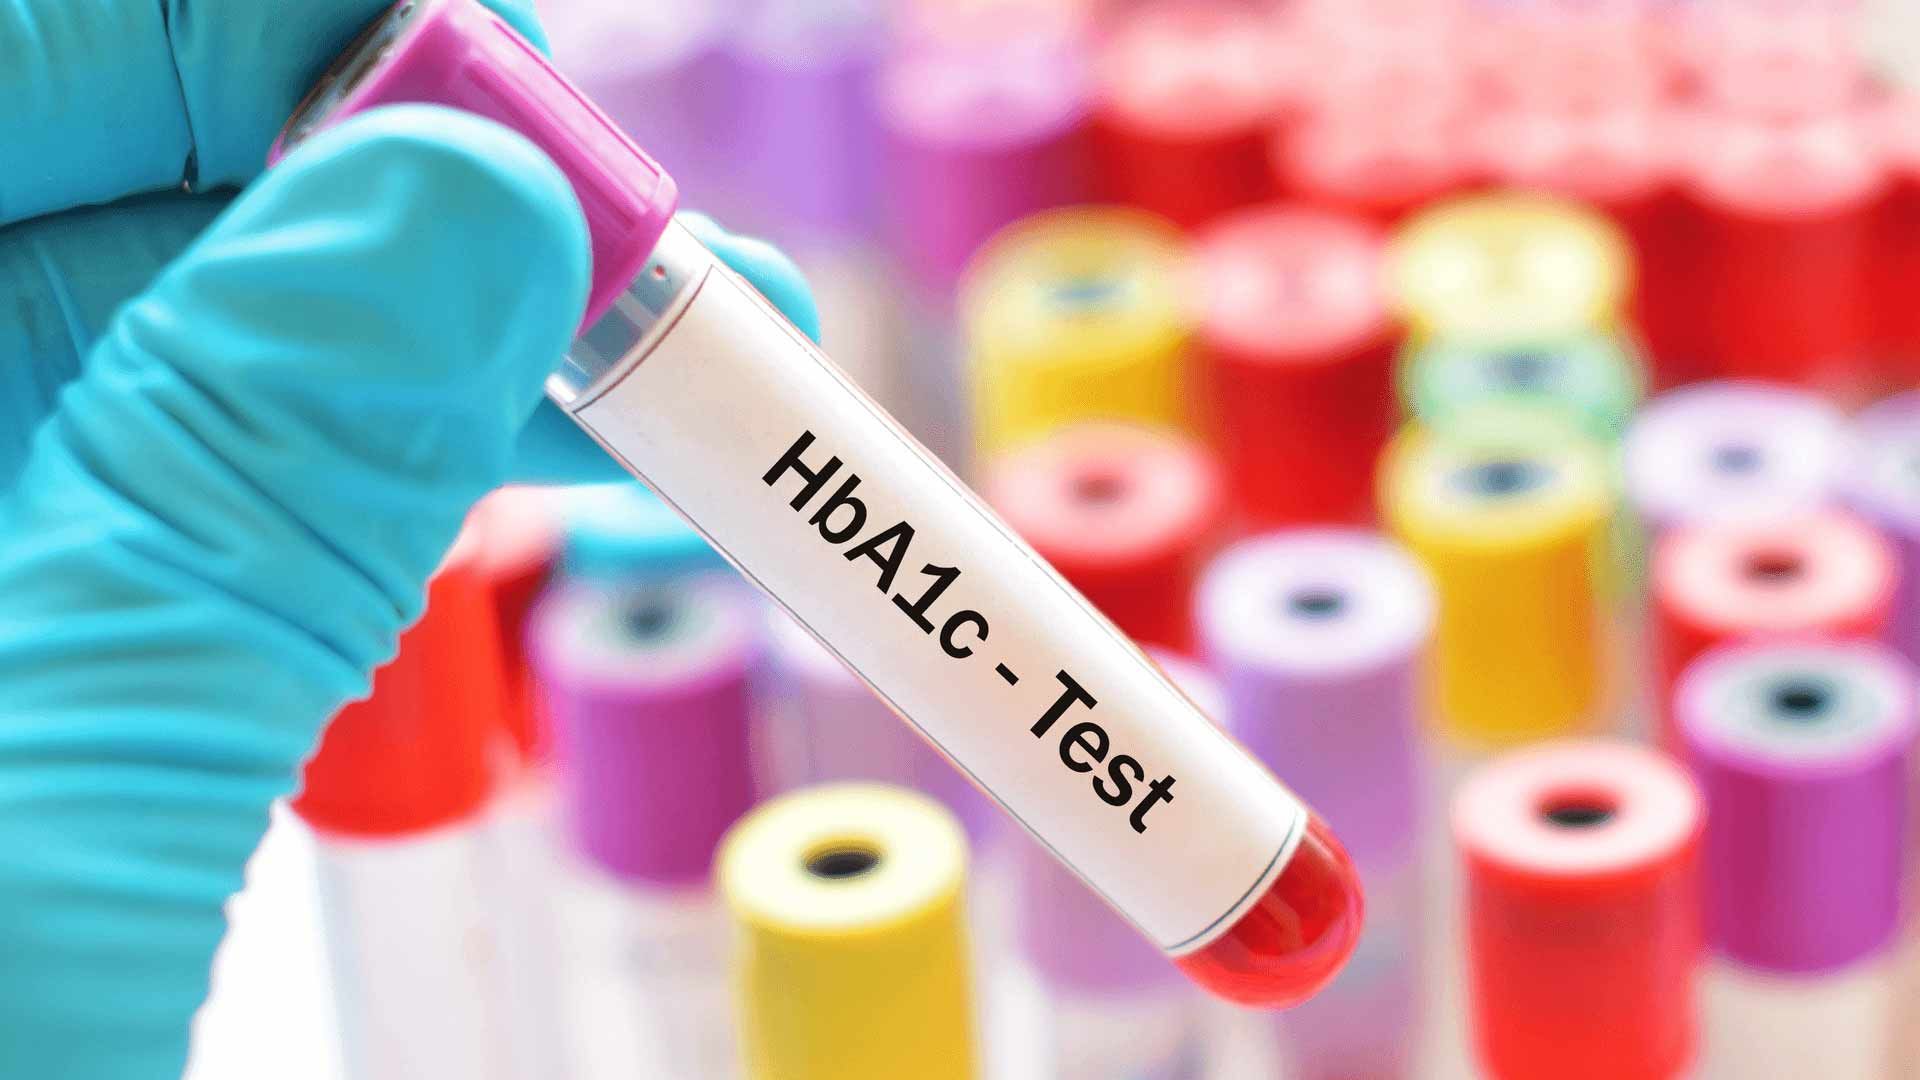 مرجع متخصصين ايران  آزمايش هموگلوبين / hba1c test